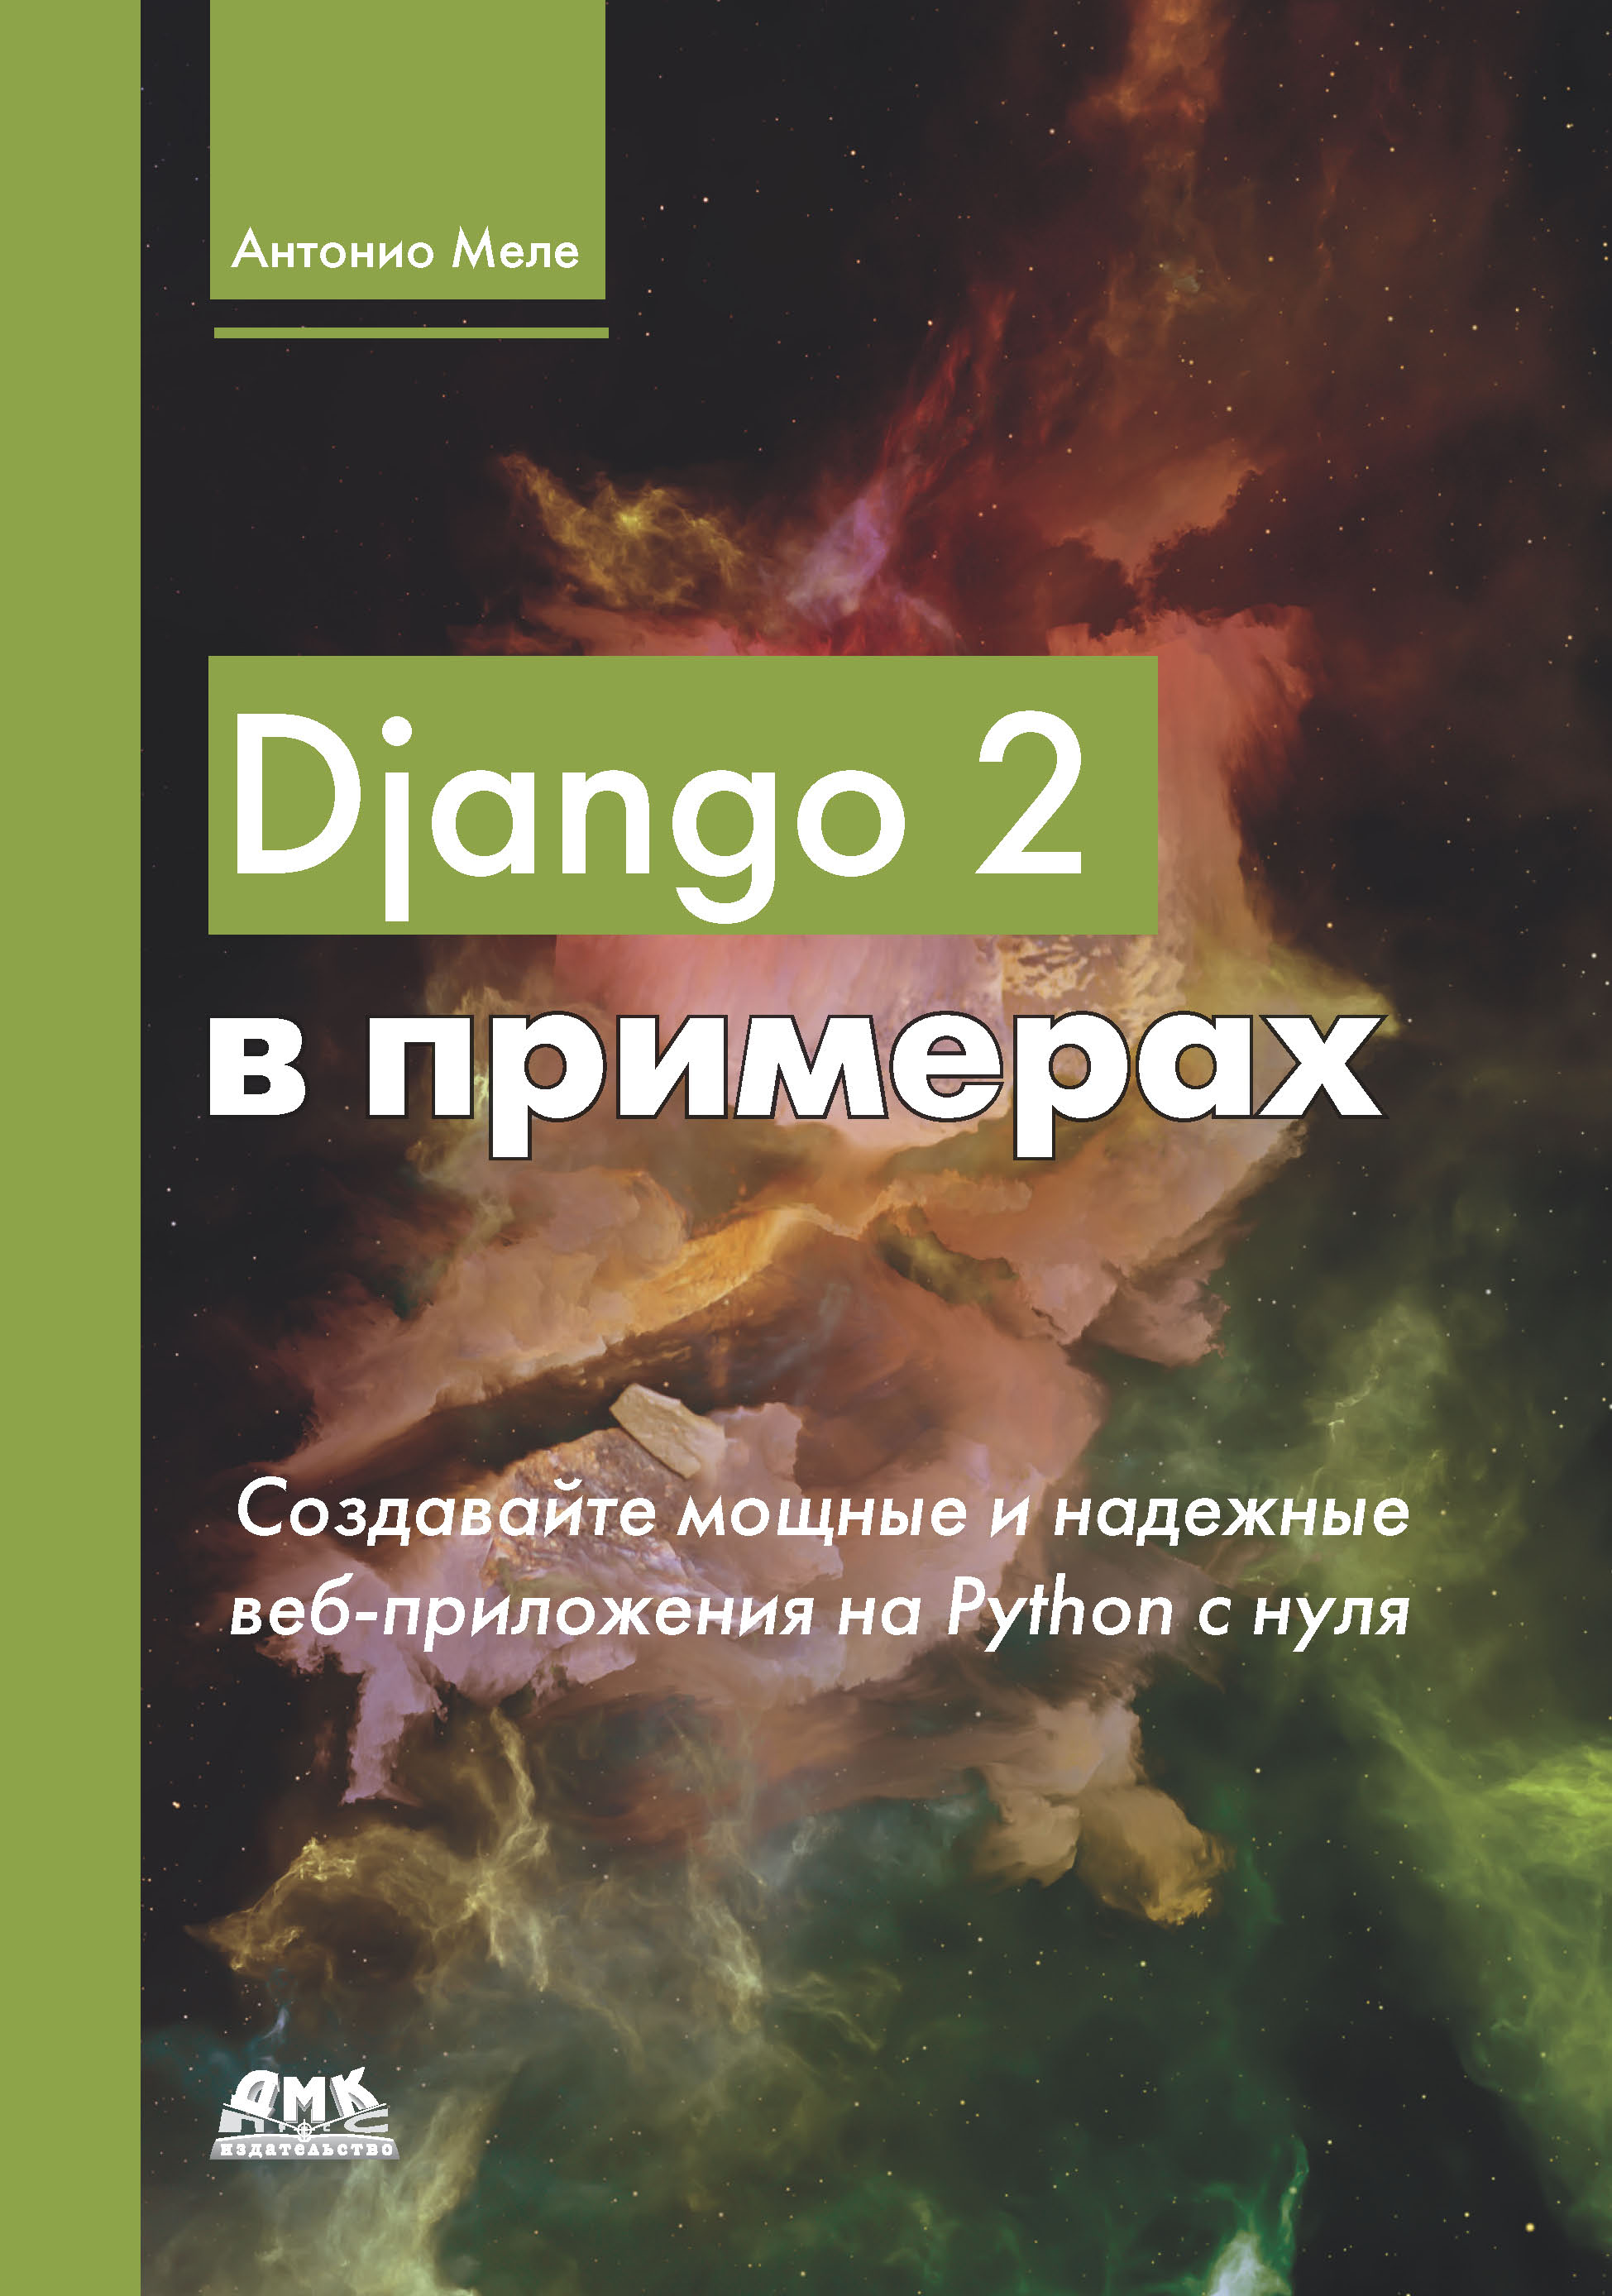 Книга  Django 2 в примерах созданная Антонио Меле, Д. В. Плотникова может относится к жанру зарубежная компьютерная литература, интернет, программирование. Стоимость электронной книги Django 2 в примерах с идентификатором 48411199 составляет 749.00 руб.